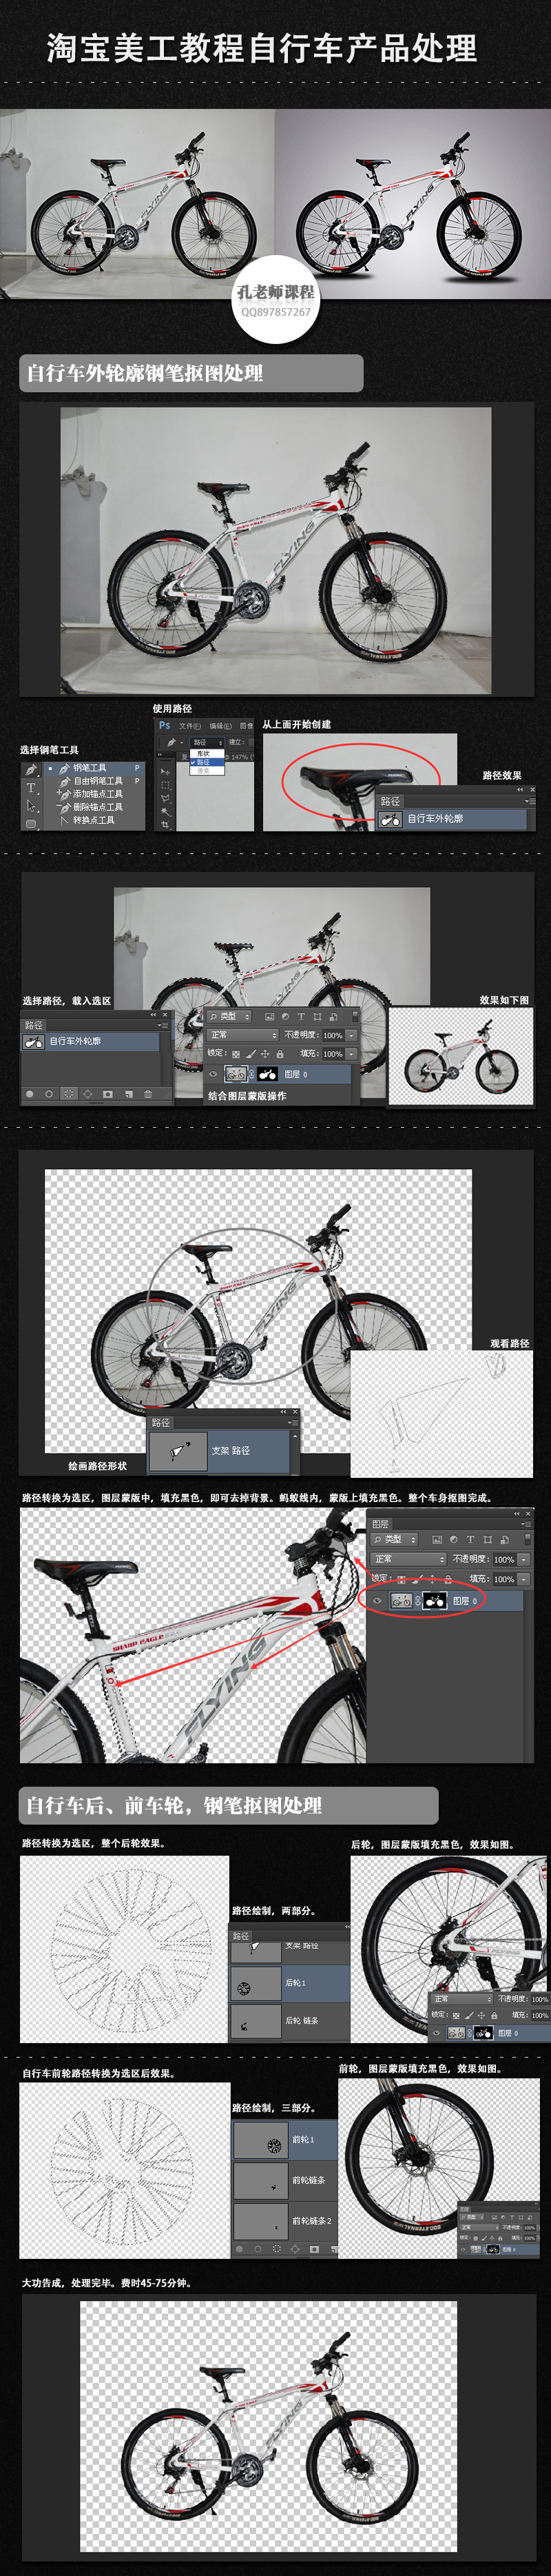 淘寶美工教程Photoshop自行車修圖處理 三聯